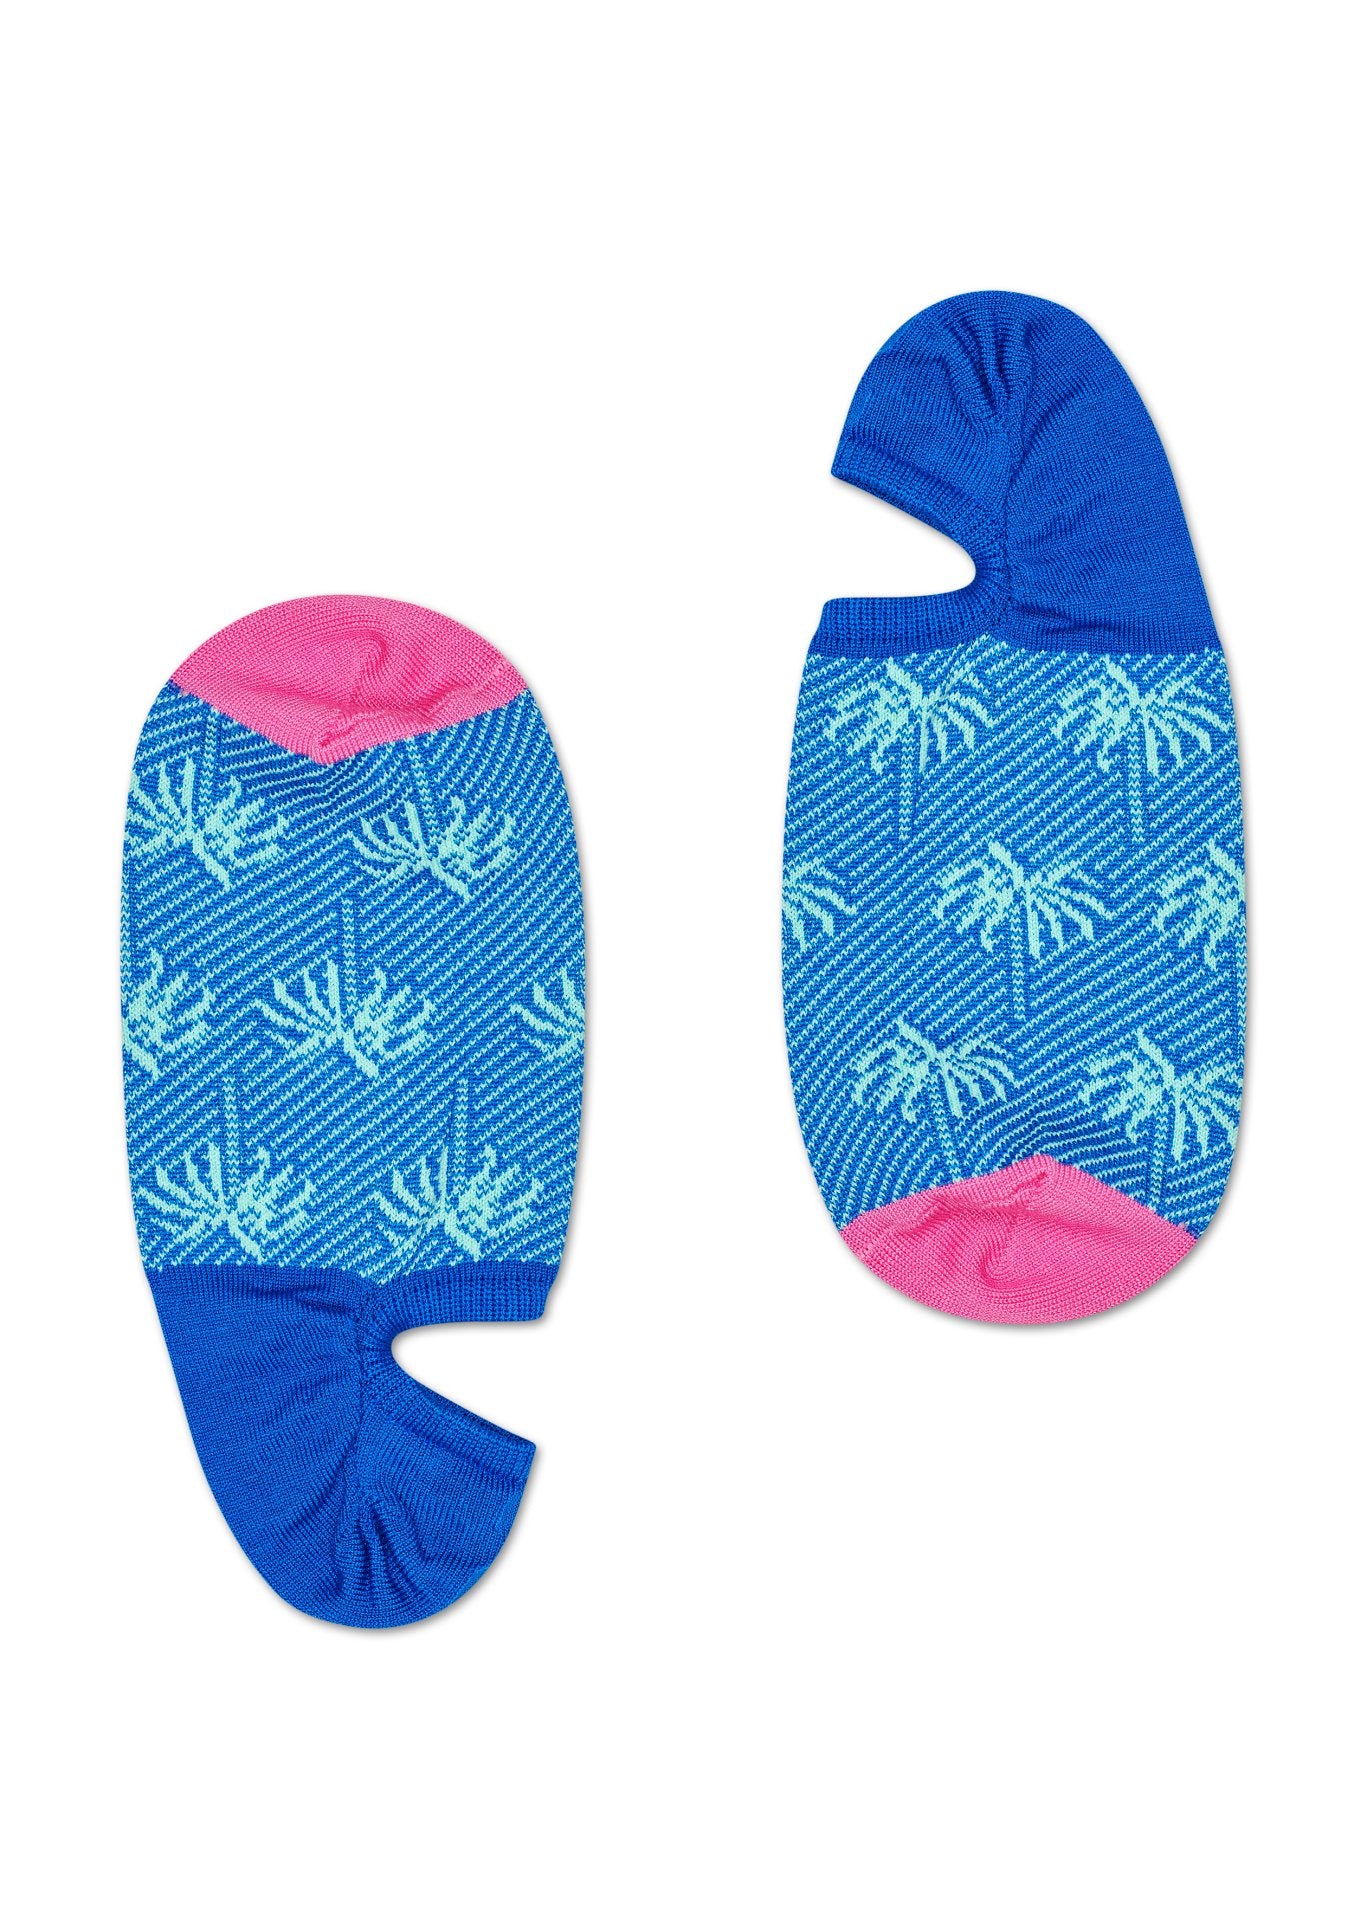 Modro-růžové nízké vykrojené ponožky Happy Socks, vzor Palm // KOLEKCE DRESSED